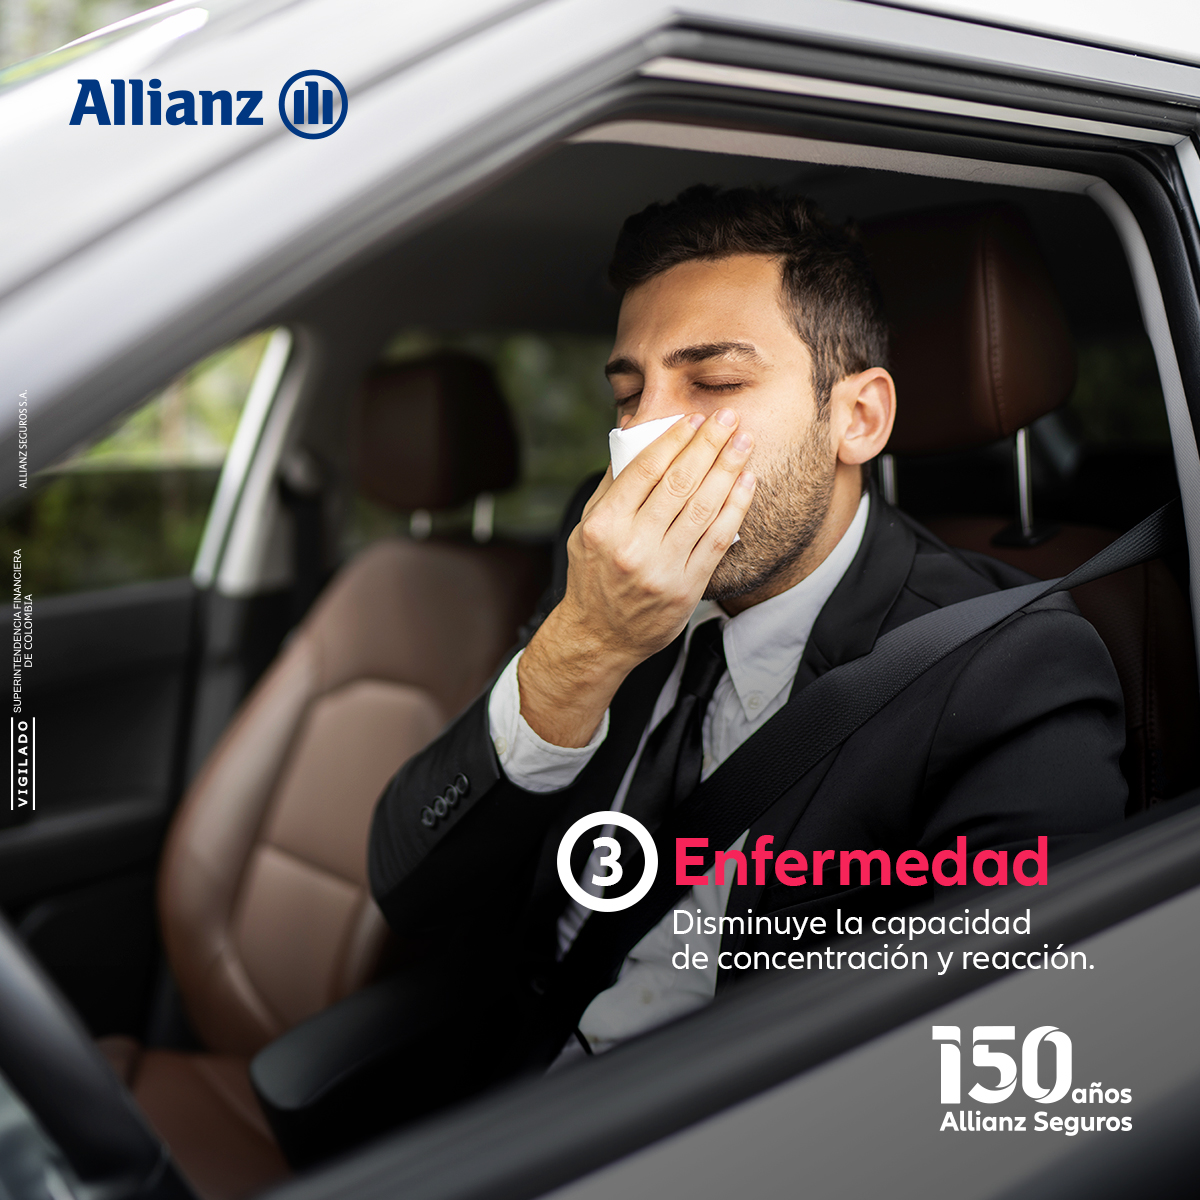 La seguridad vial comienza contigo. ⚠️ Mantente atento a estos signos y evita cometerlos cuando conduces.  😌🚗 #AllianzSeguroEstamos #Allianz150Años